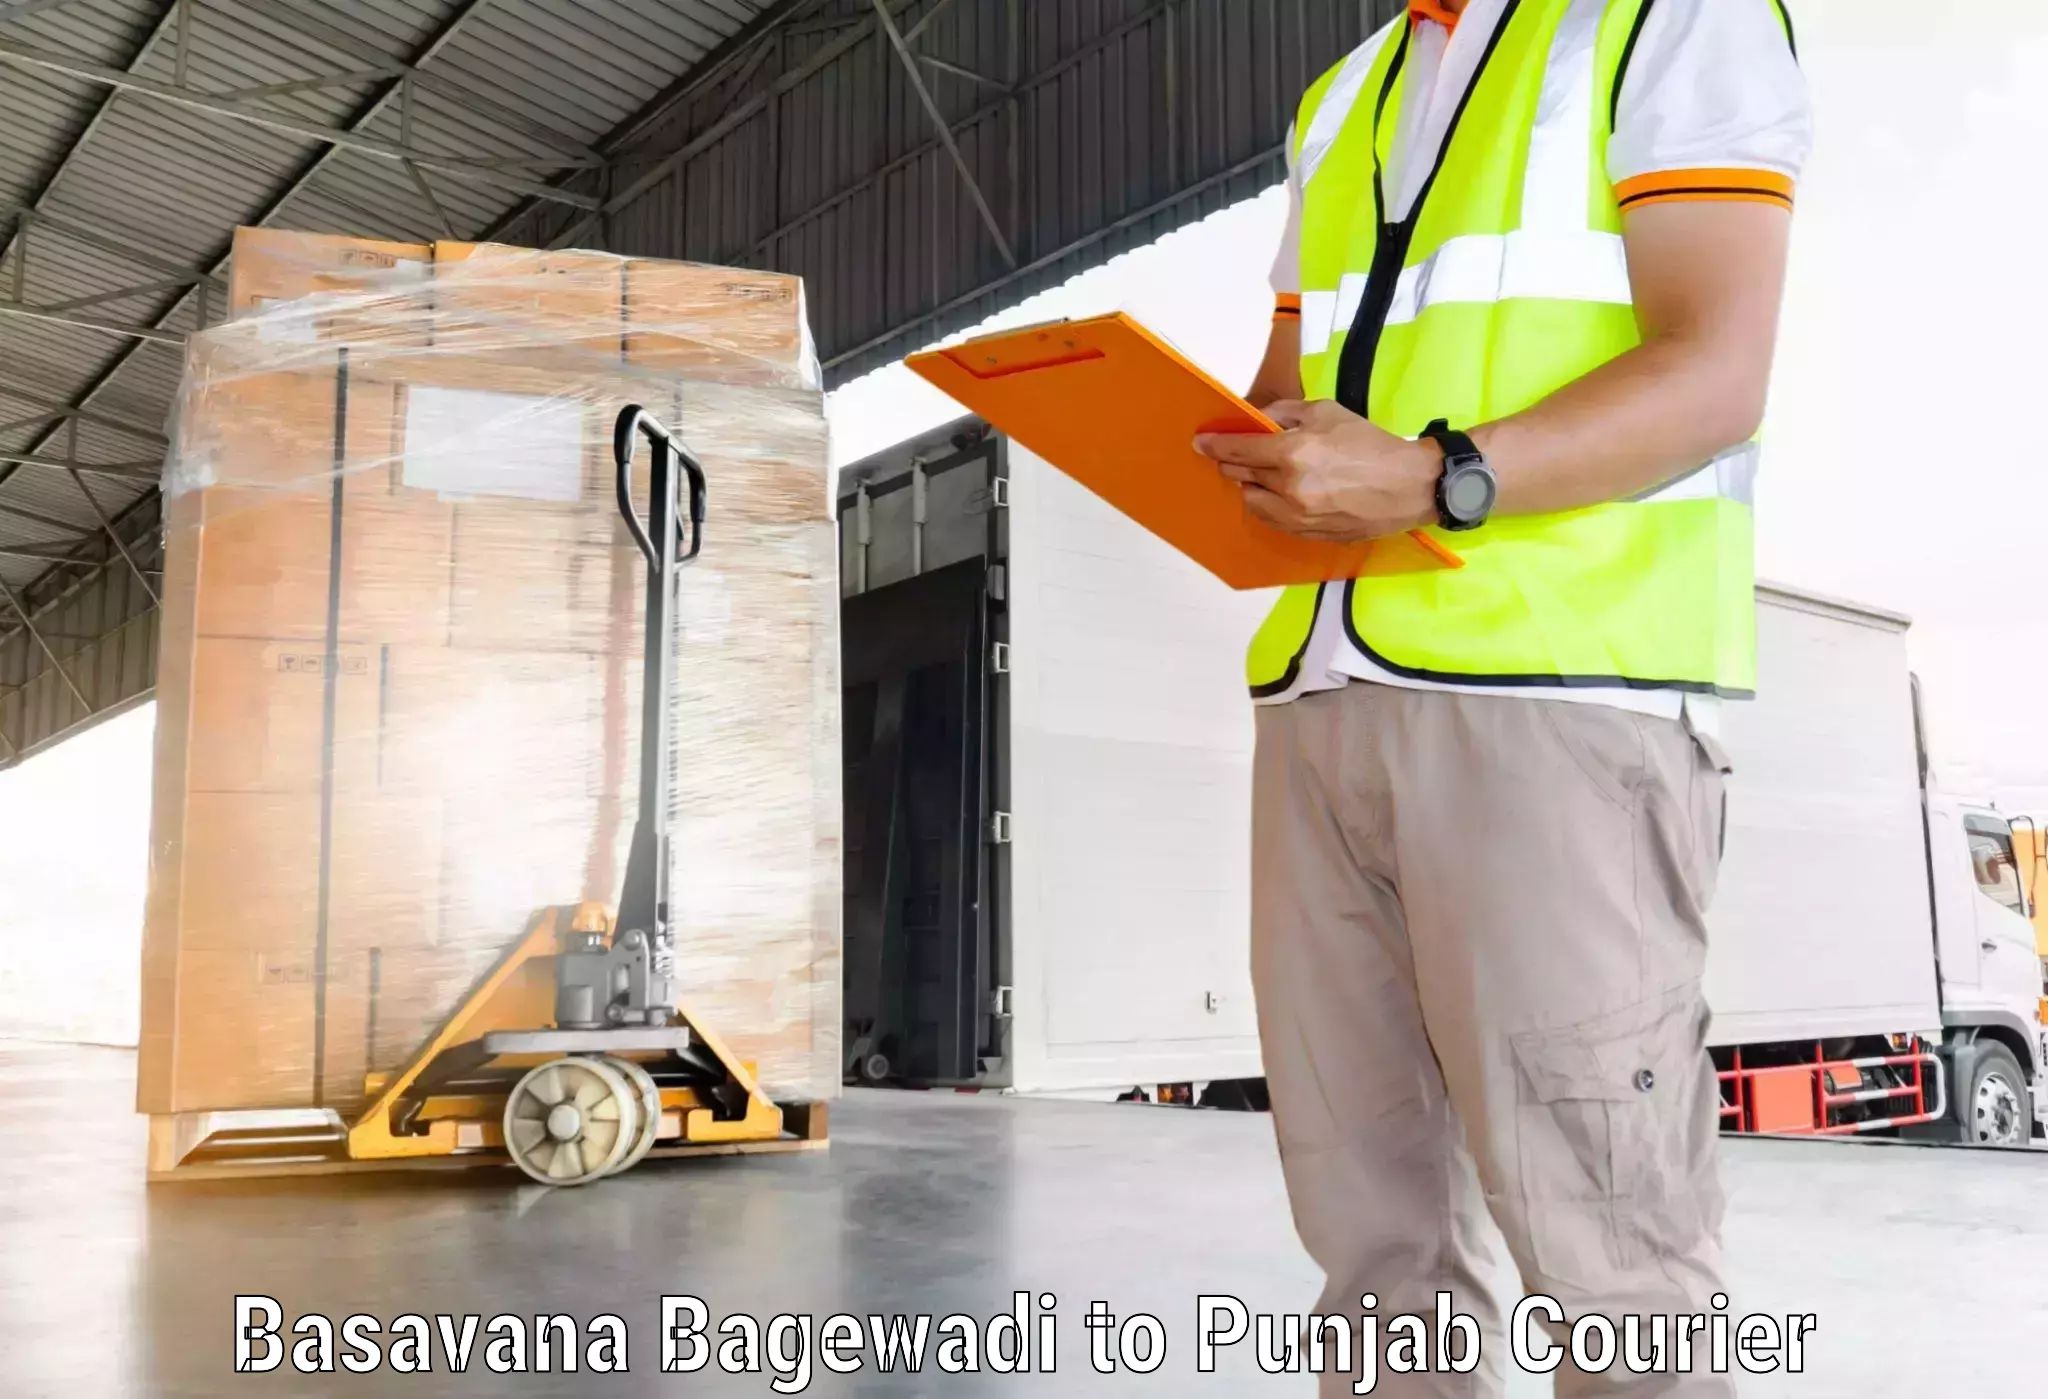 Tech-enabled shipping Basavana Bagewadi to Mohali